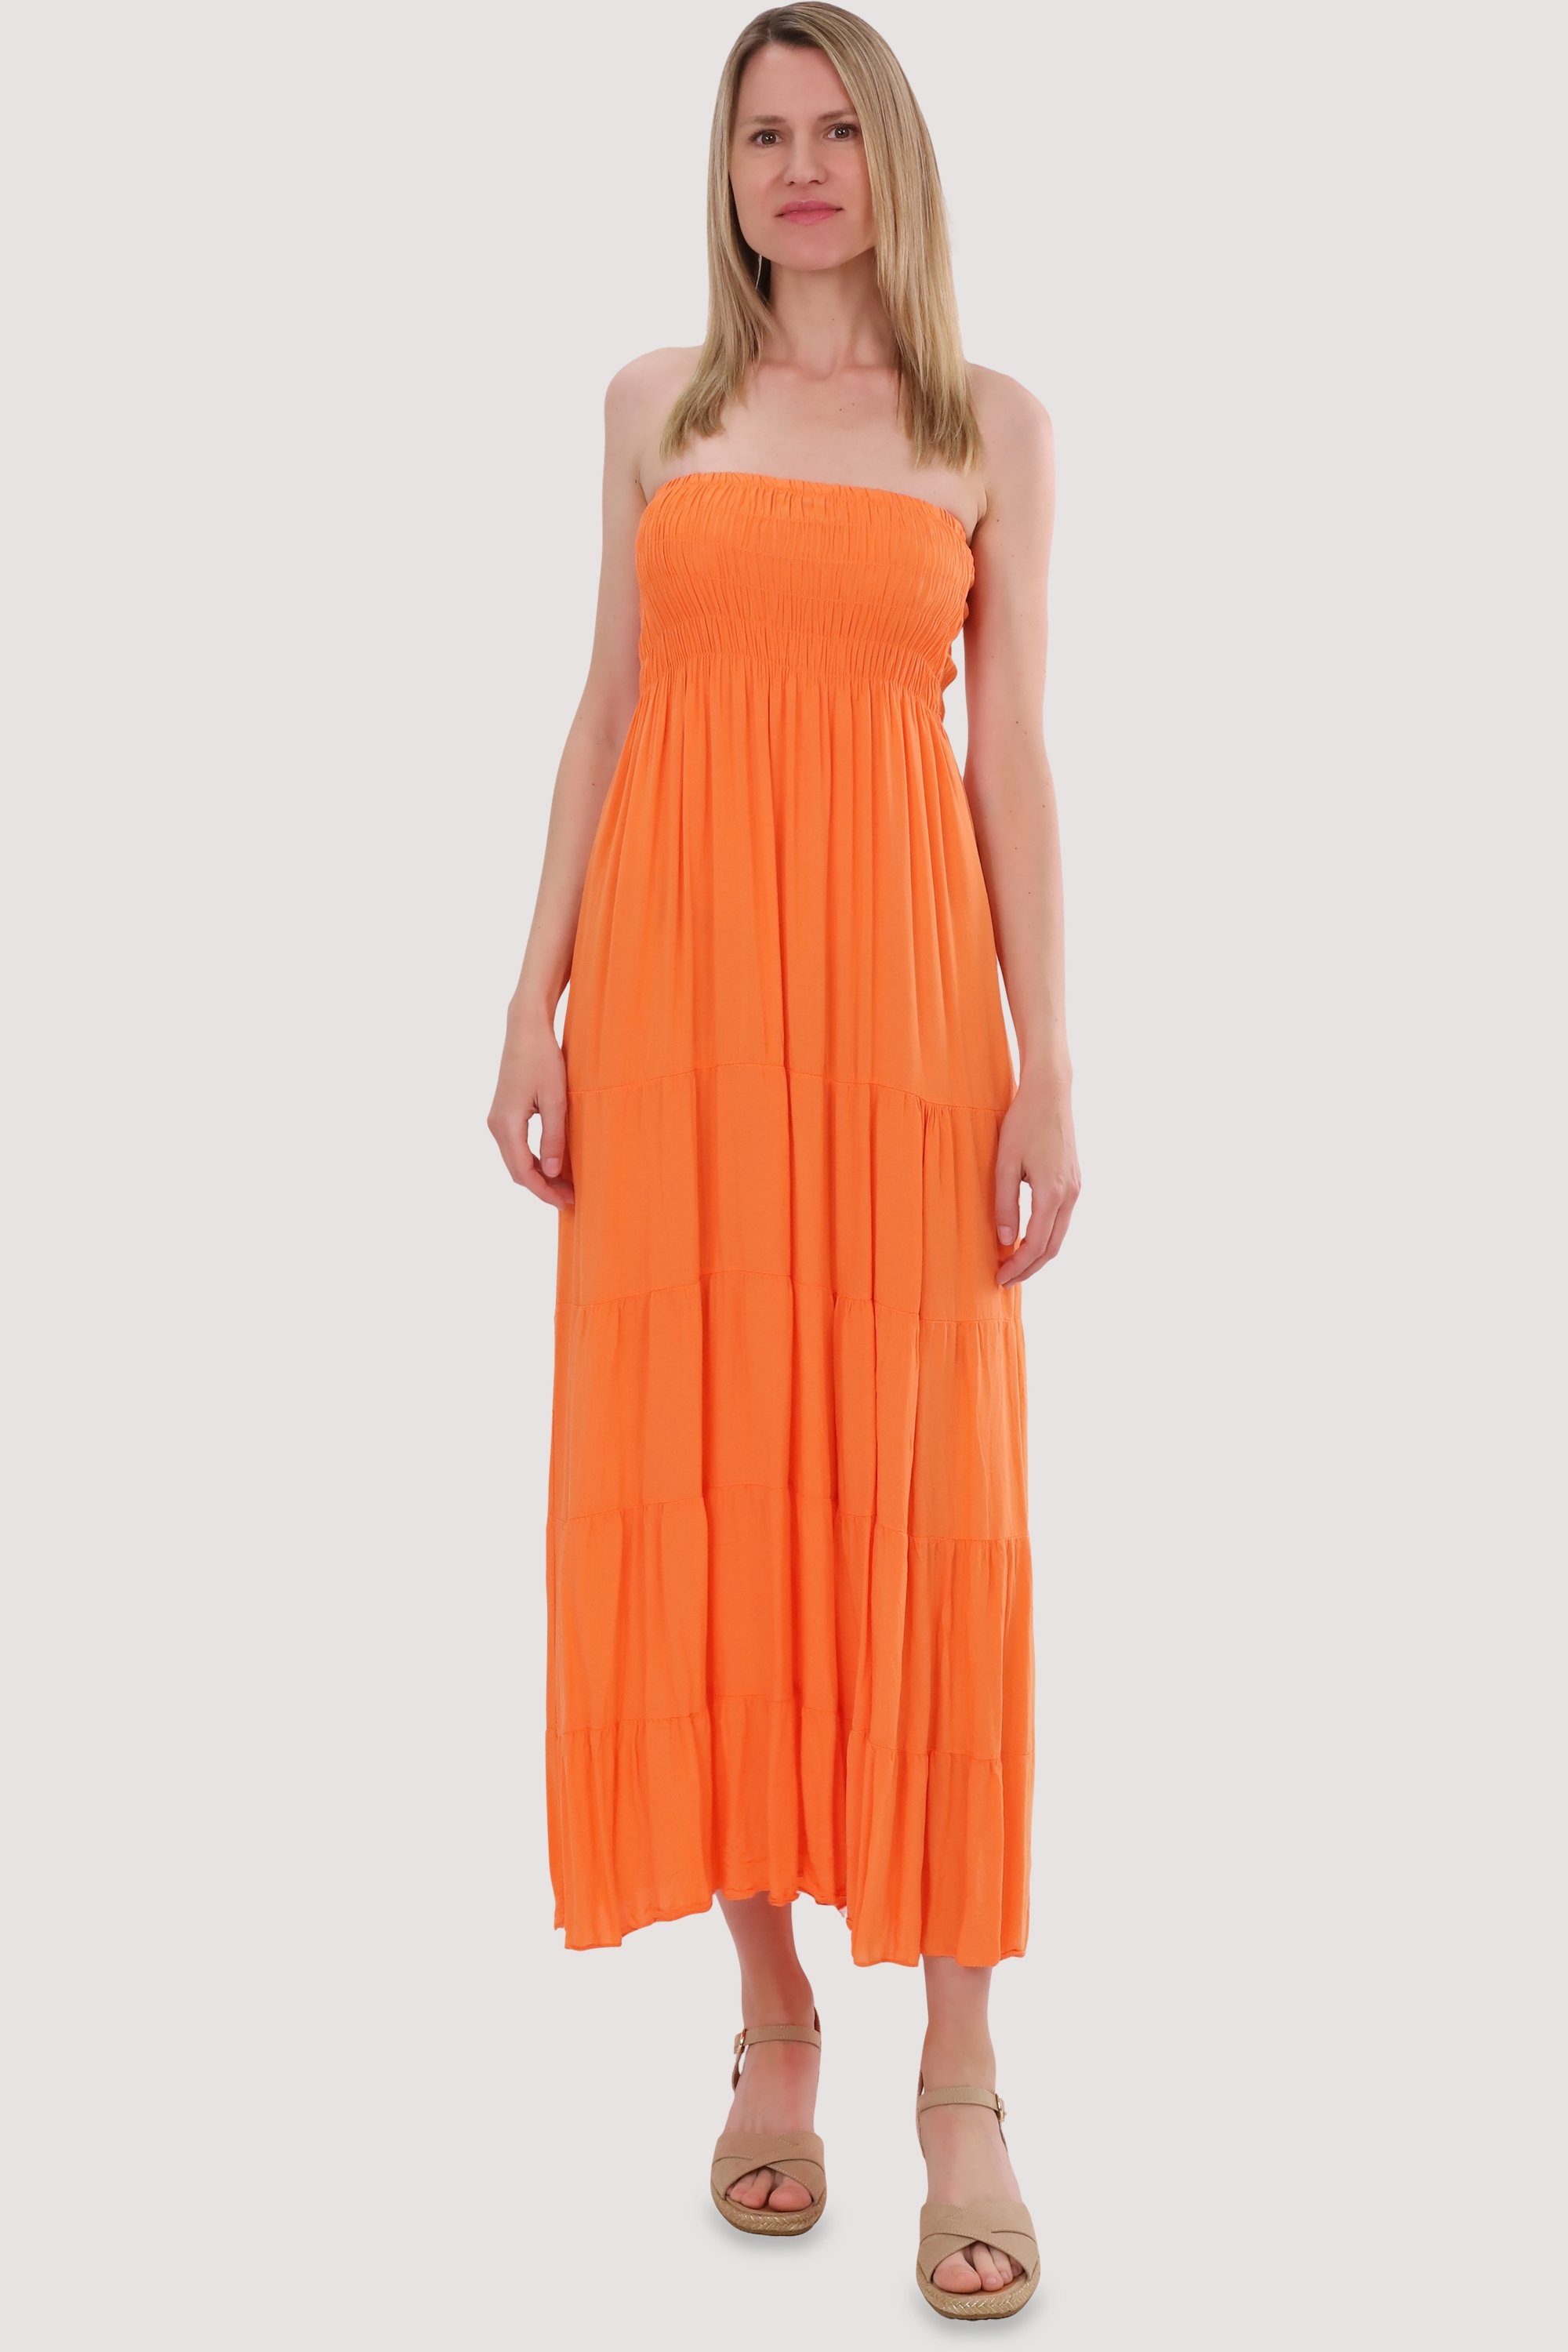 malito more than fashion Bandeaukleid 4635 figurumspielendes Sommerkleid Strandkleid Einheitsgröße orange